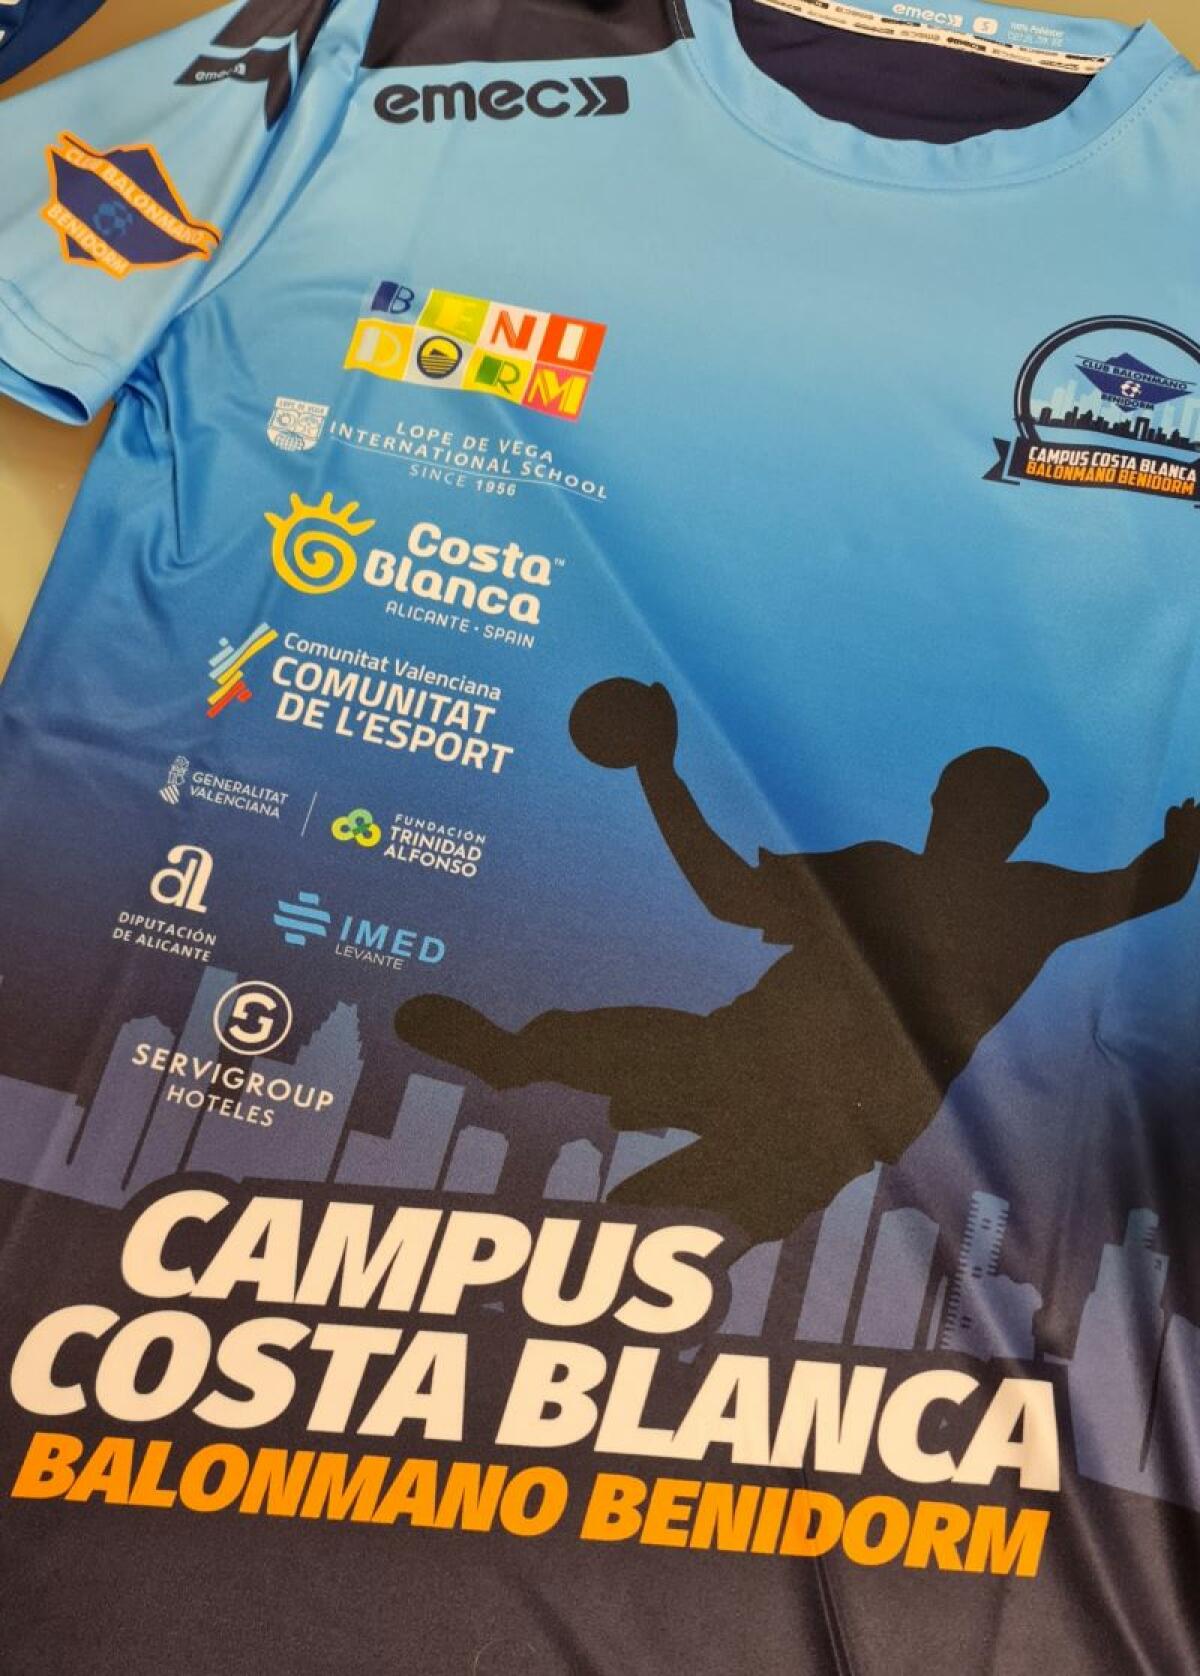 Este pasado fin de semana finalizaba con un notable éxito el primer Campus Costa Blanca organizado por el Balonmano Benidorm, y celebrado en las instalaciones del Palau d’Esports y del C.I. Lope de Vega.